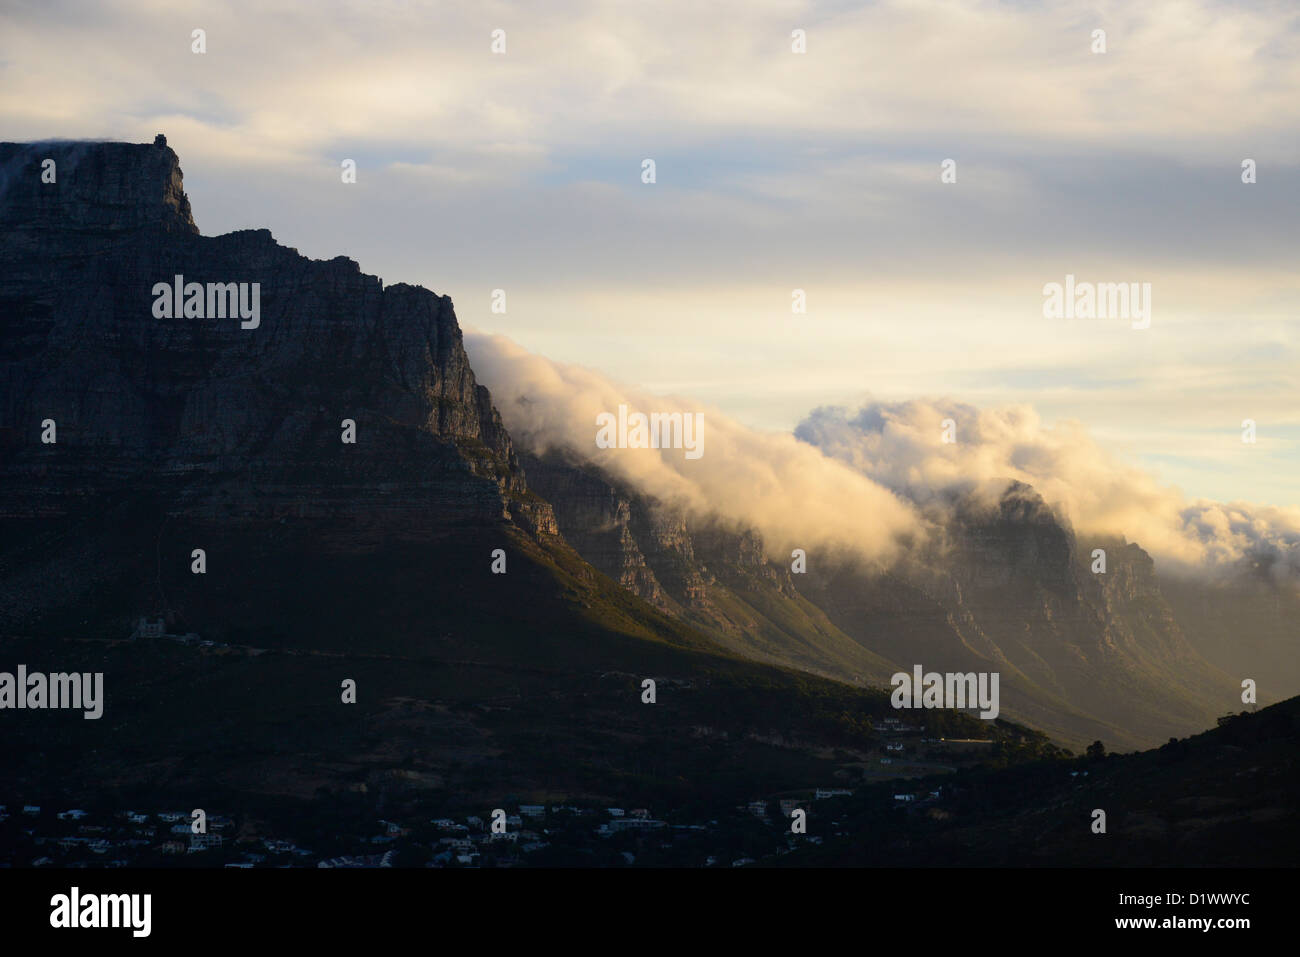 Abend-Schuss auf den Tafelberg, Silhouette der Seilbahnstation auf Berg, neblige Wolken Rollling über Berg. Stockfoto